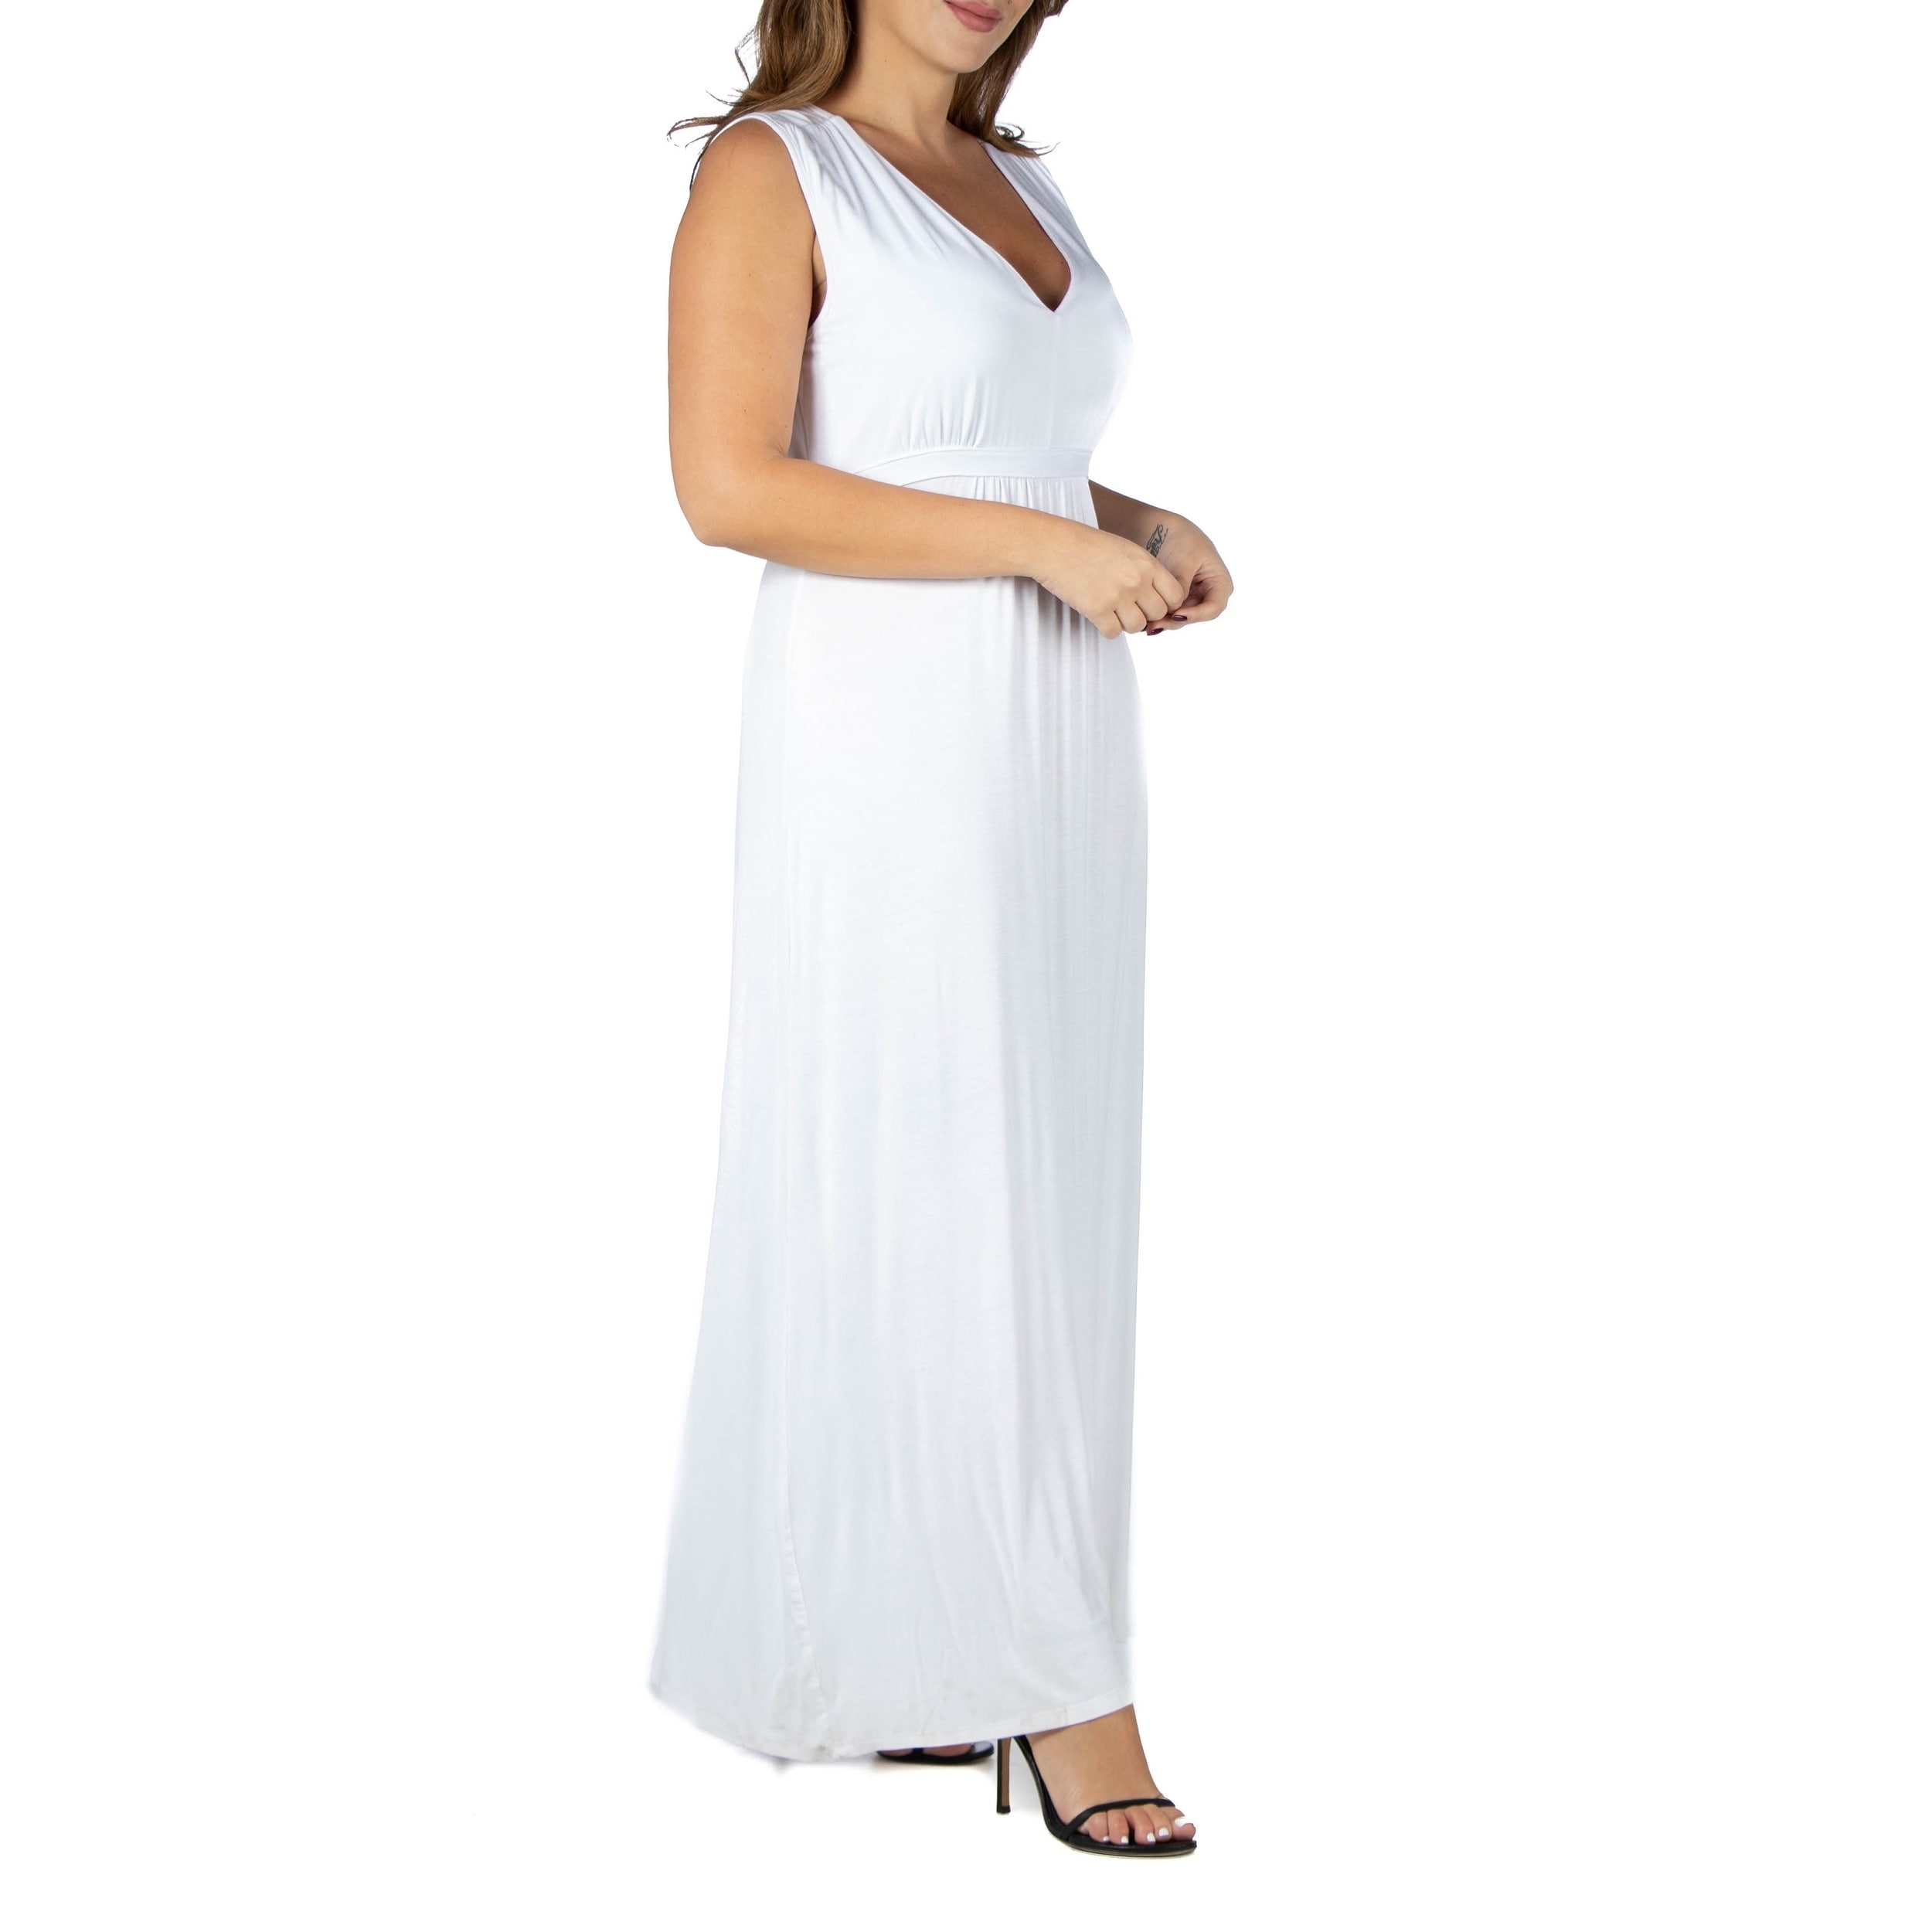 white sleeveless dress plus size